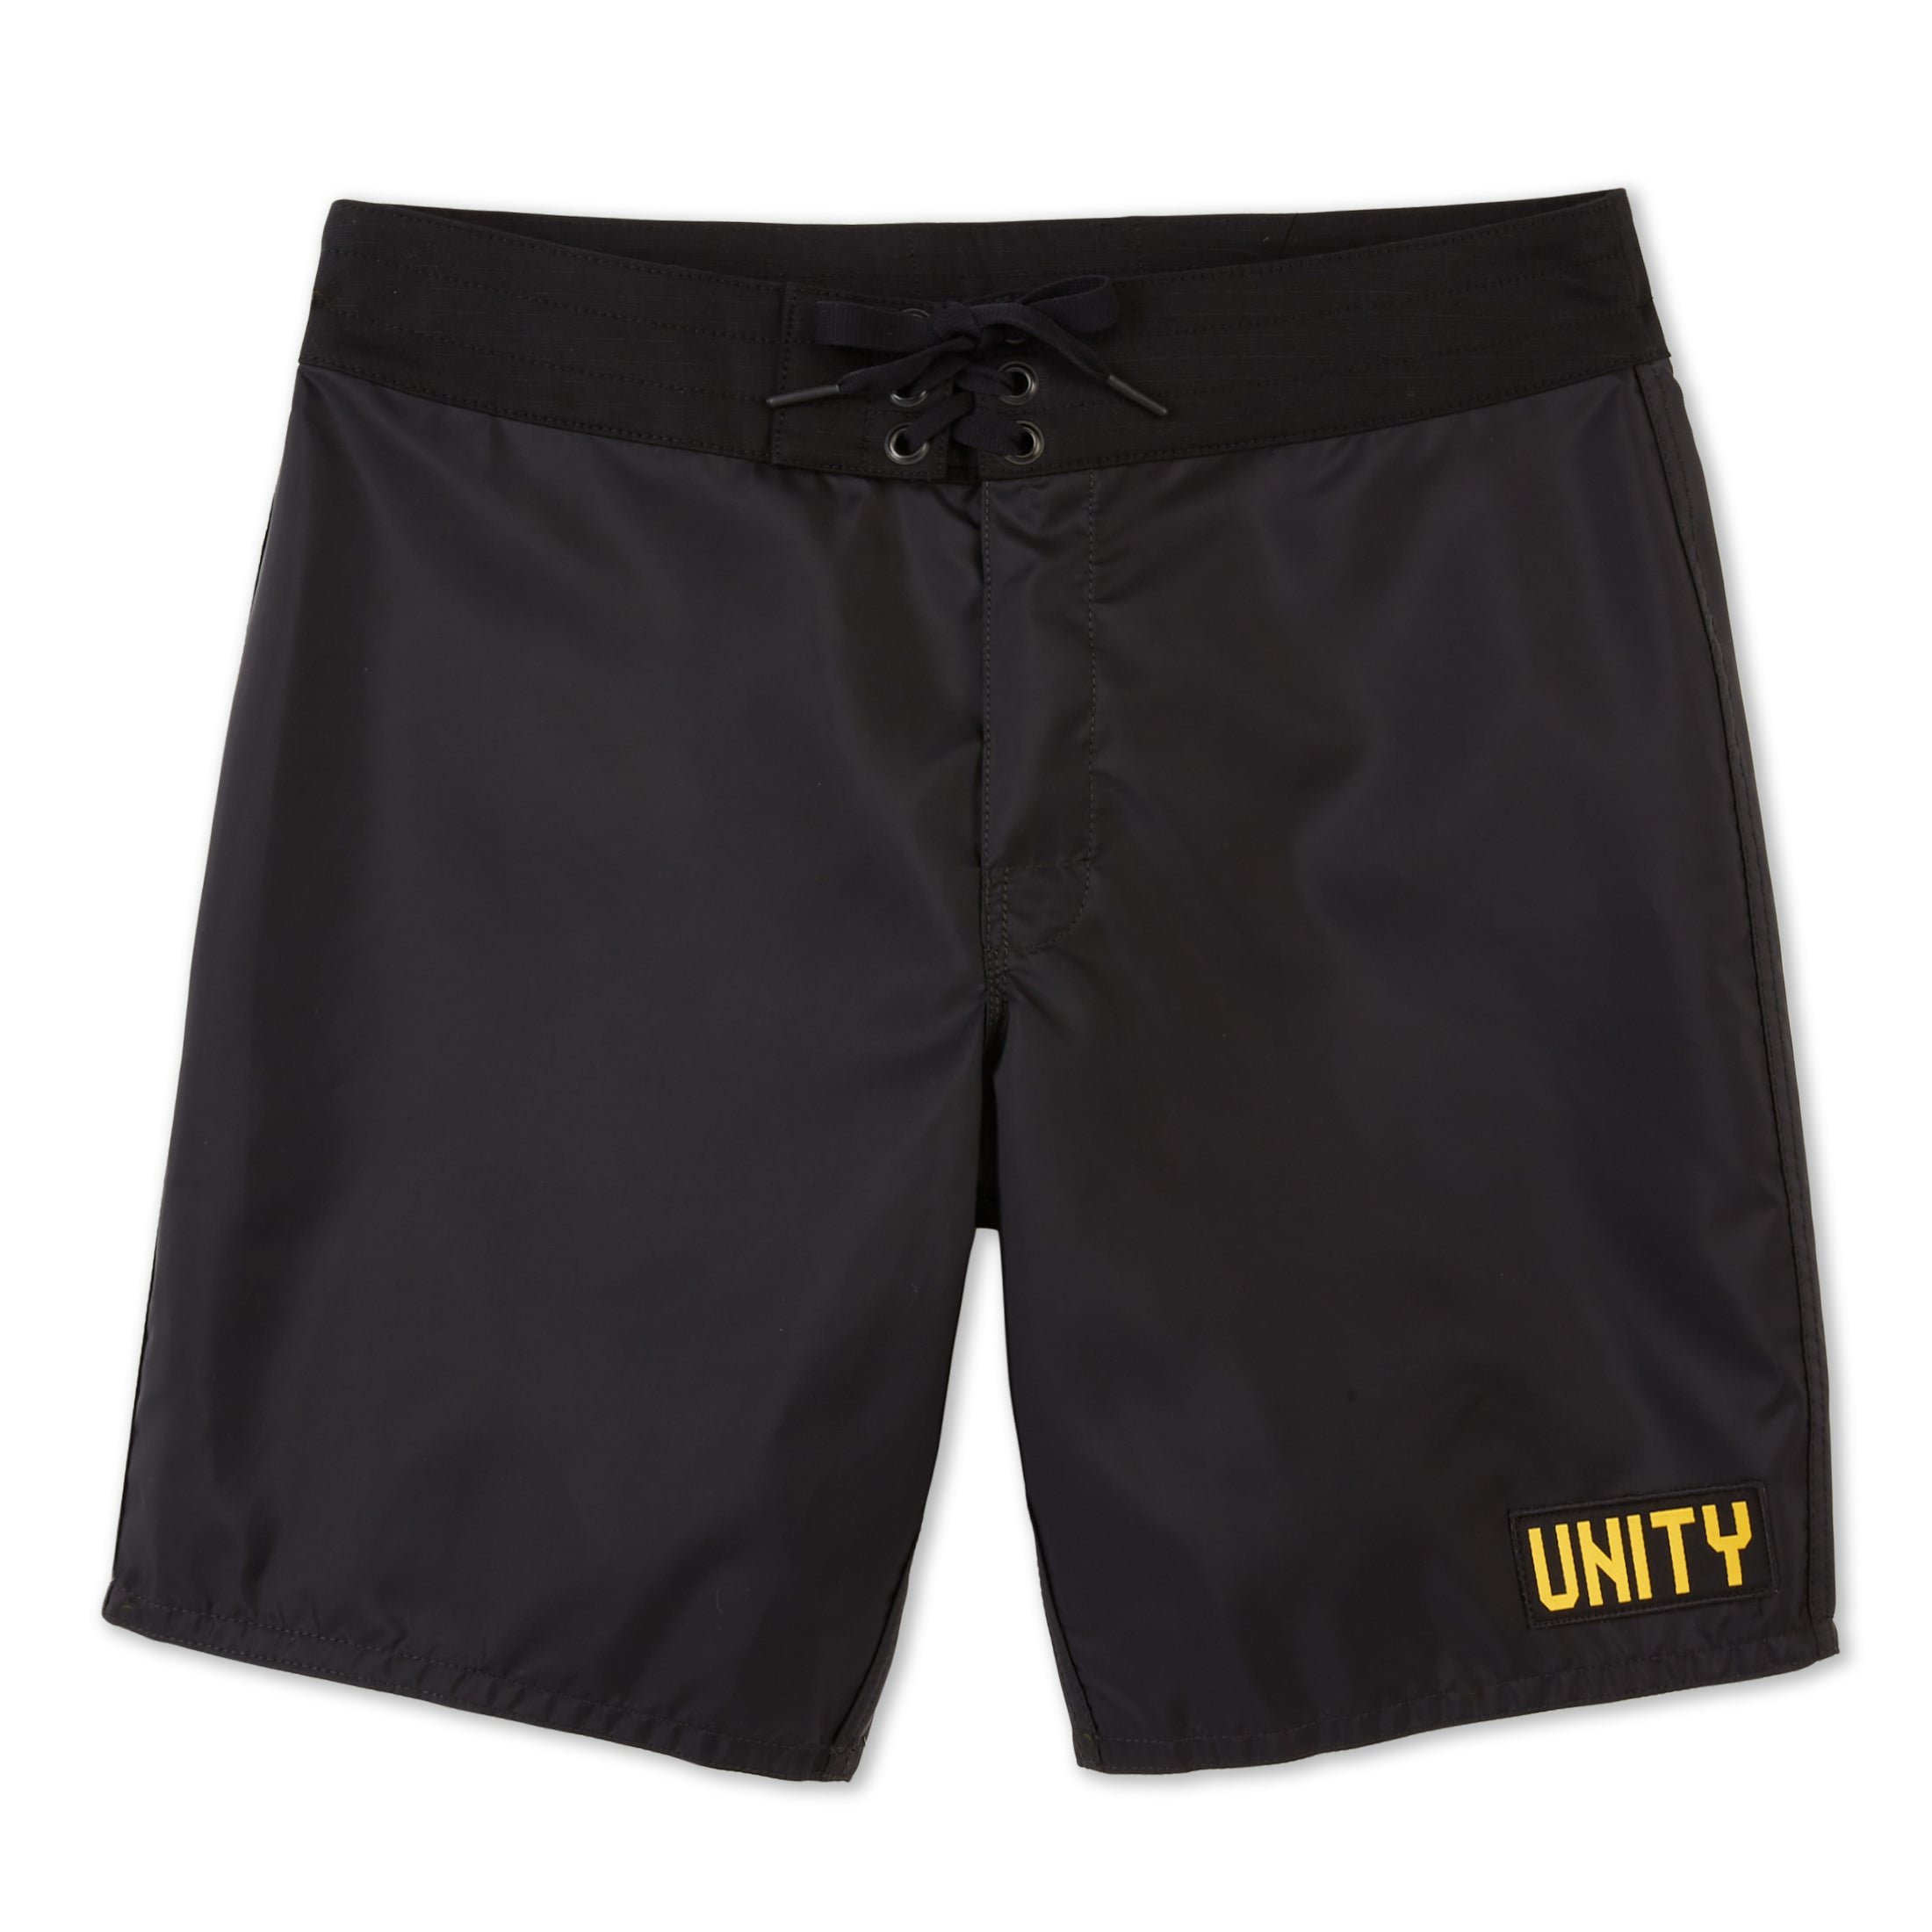 311 Limited-Edition Unity Board Shorts - Black | Birdwell Beach Britches